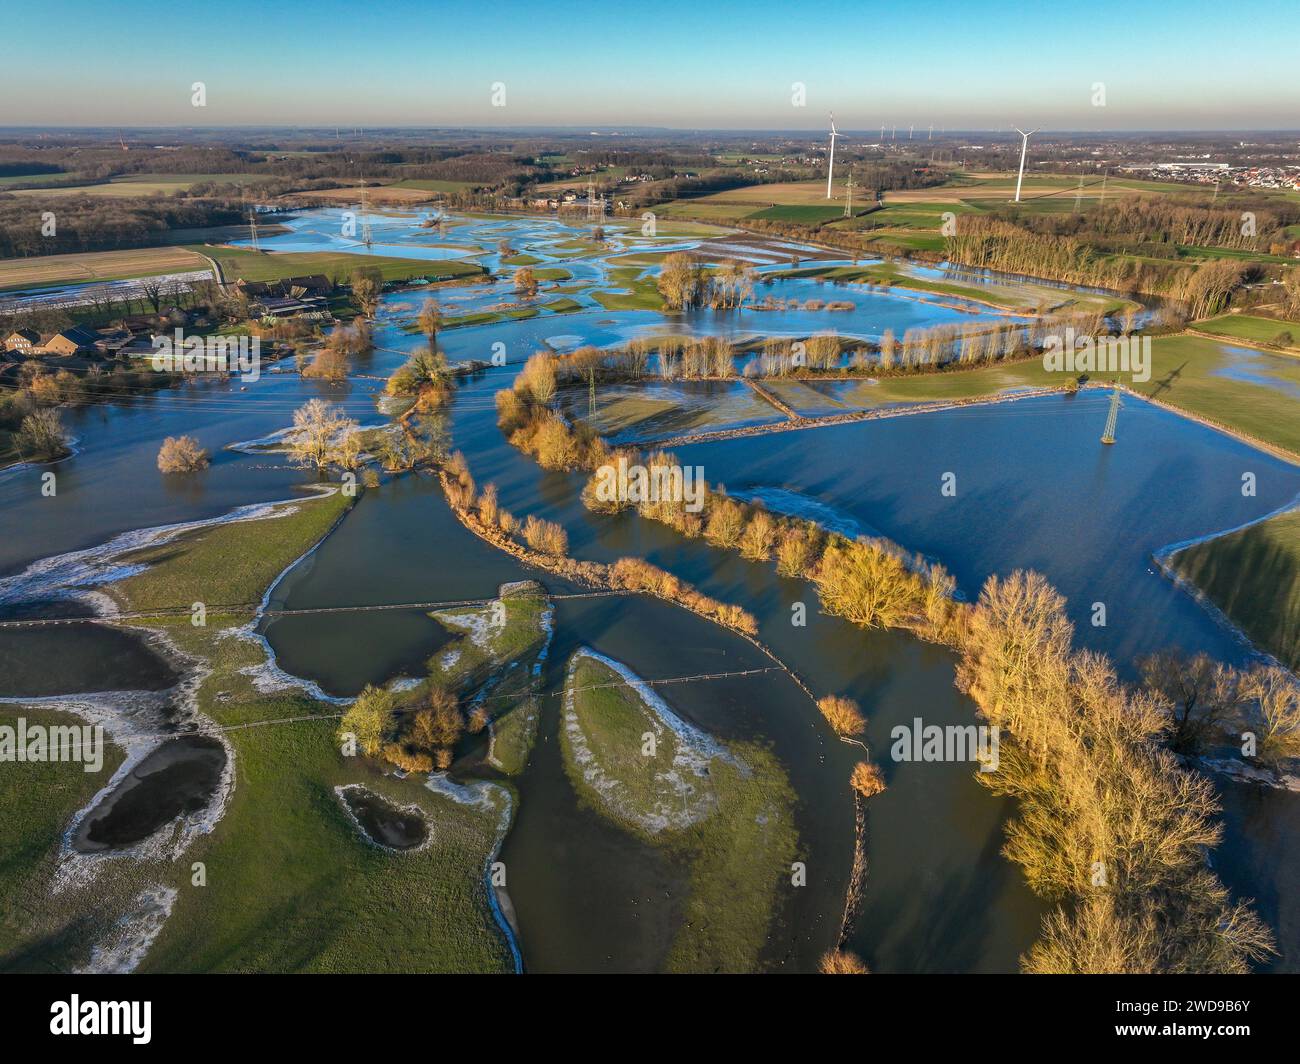 Selm, Nordrhein-Westfalen, Deutschland - Hochwasser an der Lippe, Fluss im Ruhrgebiet, die Felder, die landwirtschaftlichen Flächen der Bauern neben dem Wasser Stockfoto